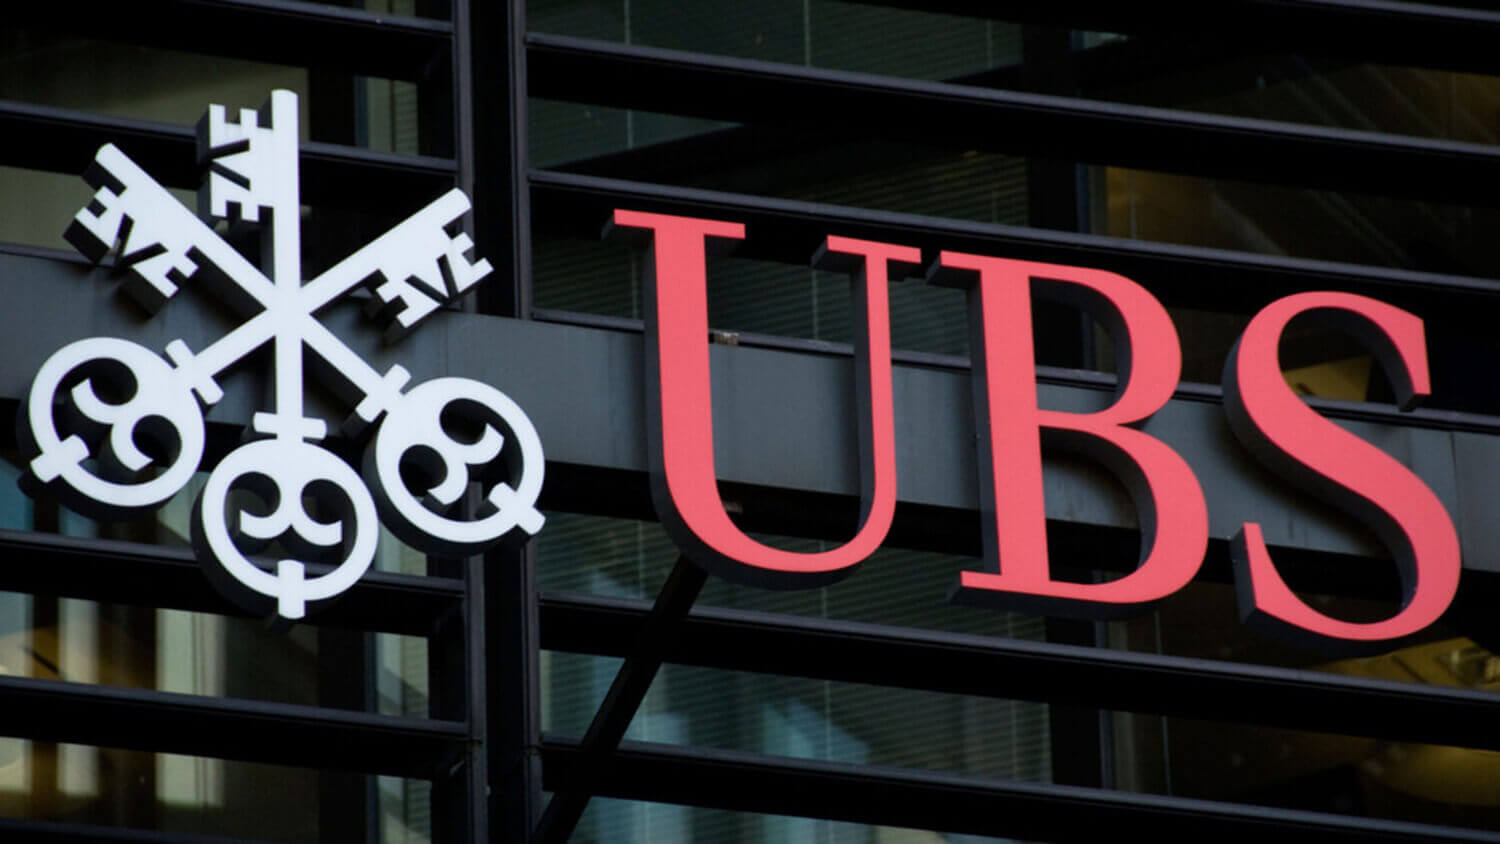 Под угрозой краха находятся 186 банков из США. Что это может значить для индустрии криптовалют? Логотип банка UBS. Фото.